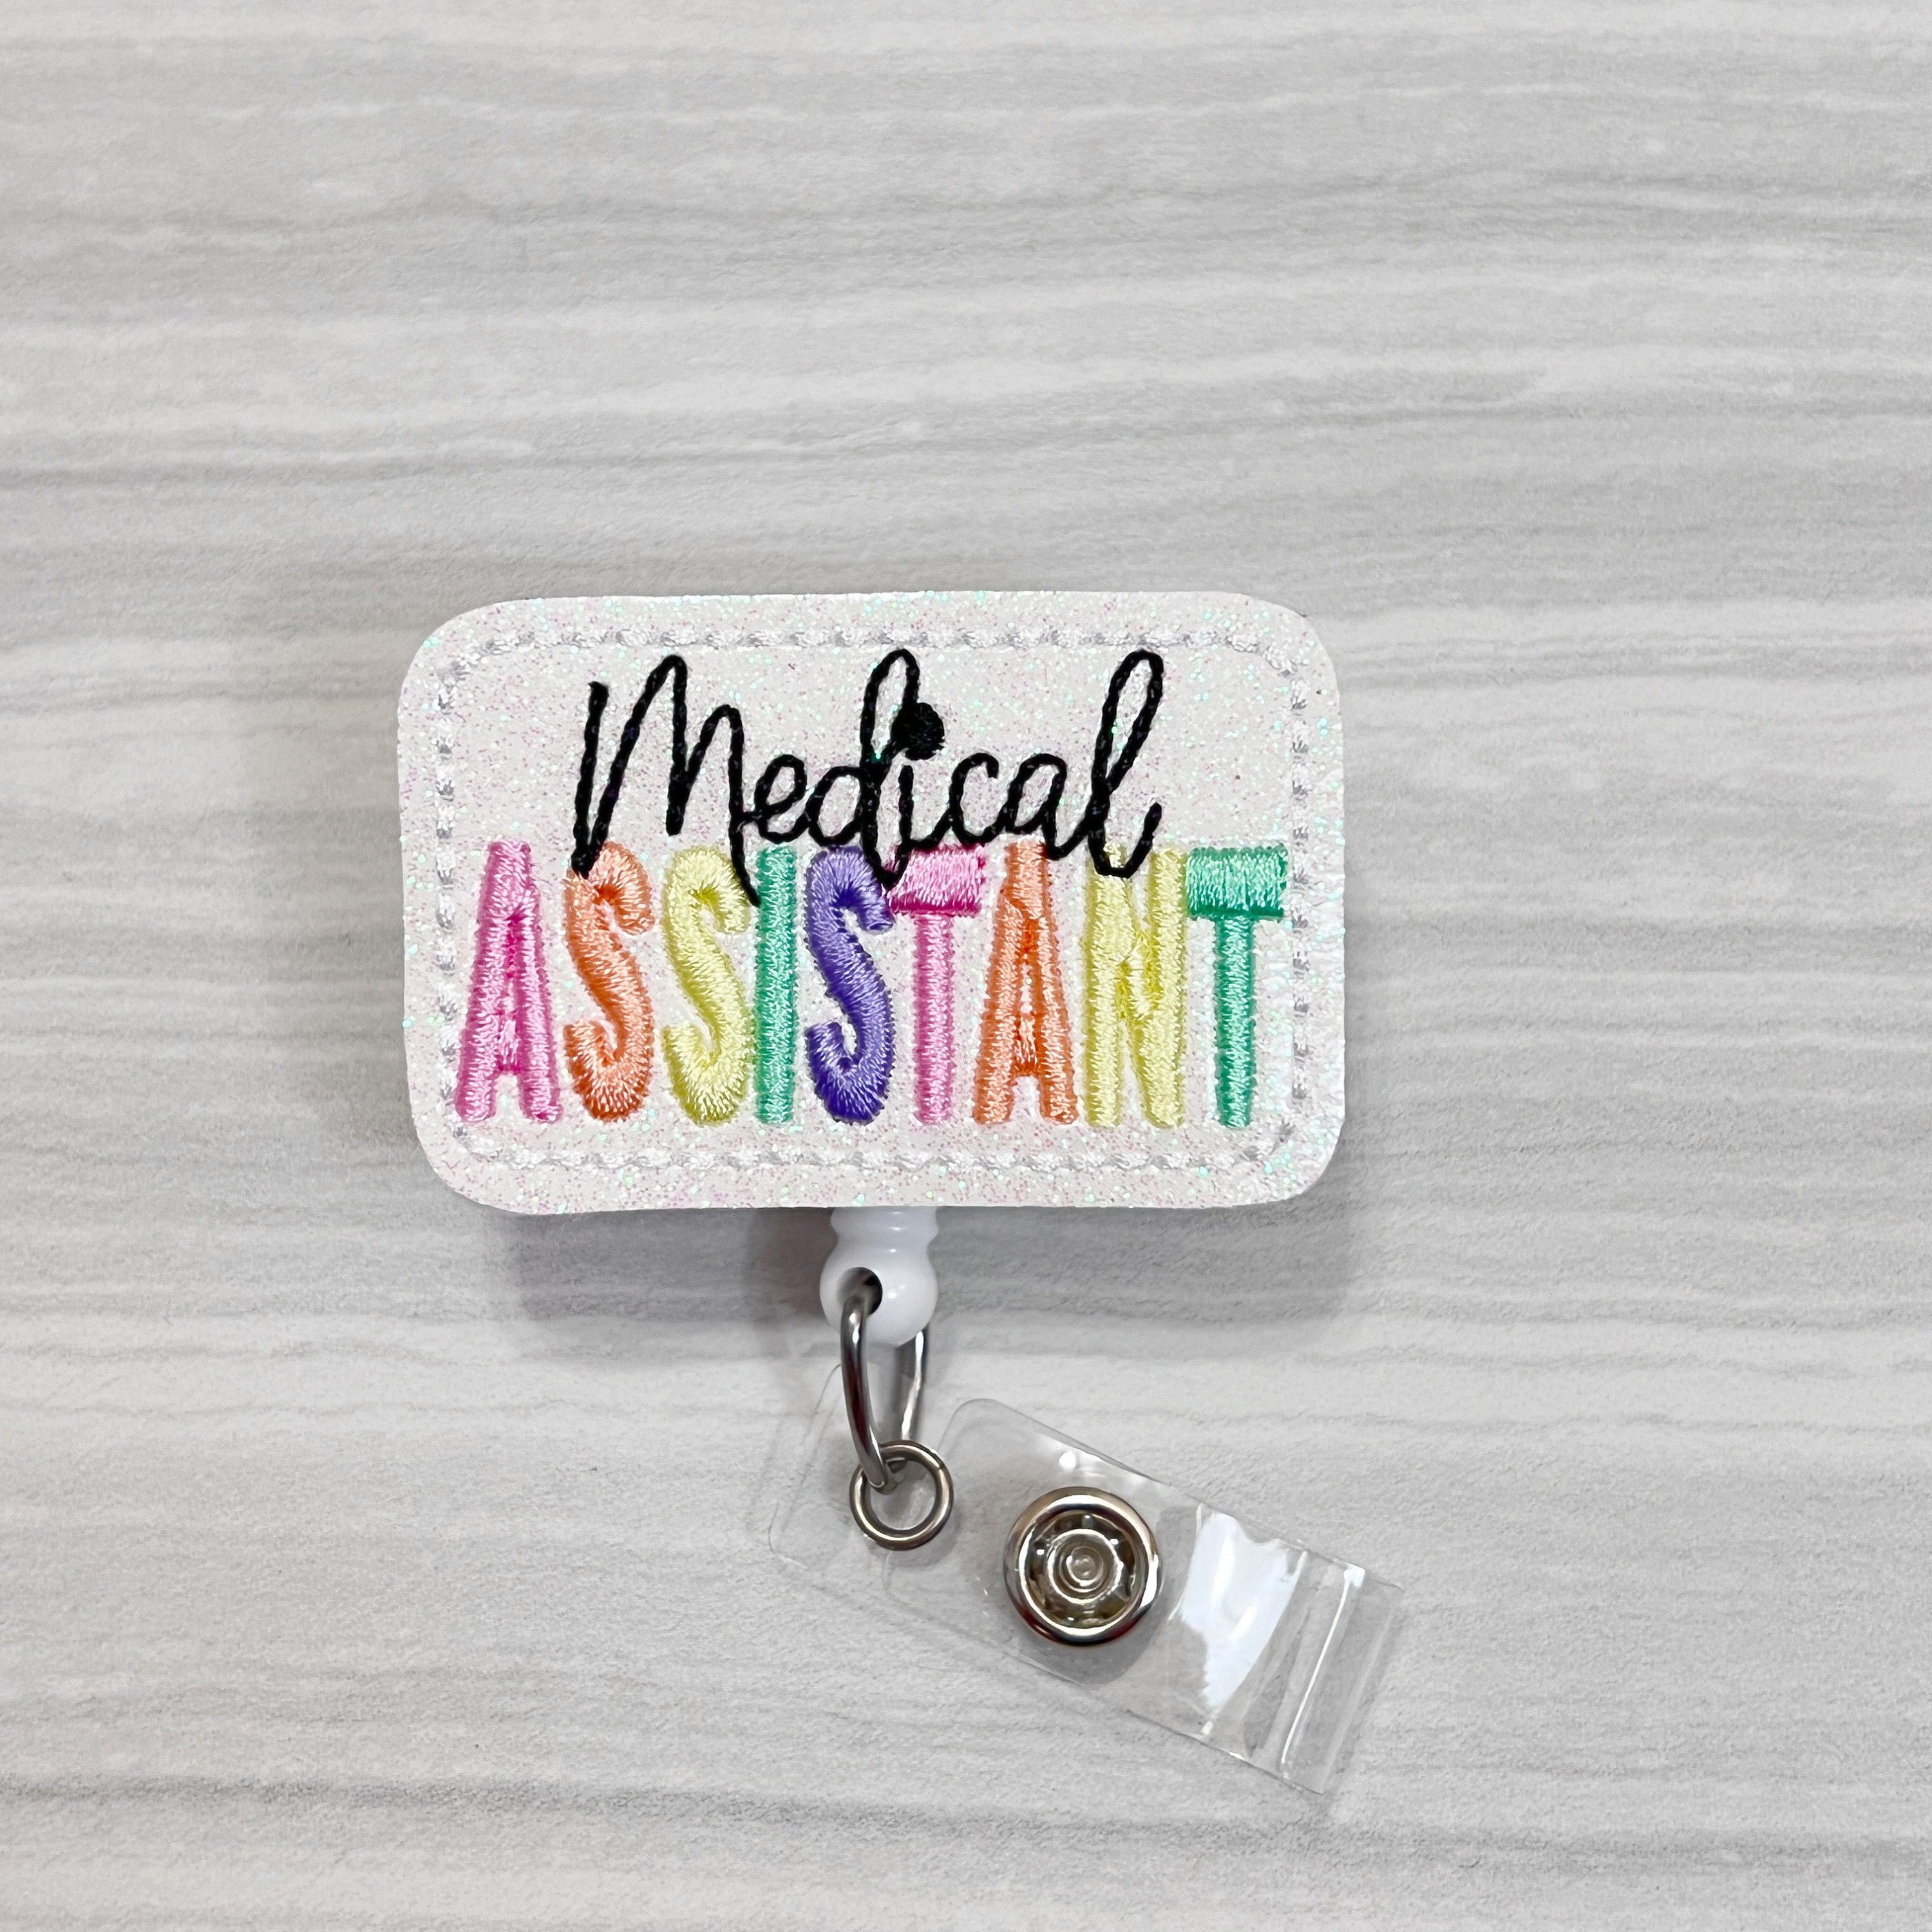 Medical Assistant Badge Holder 